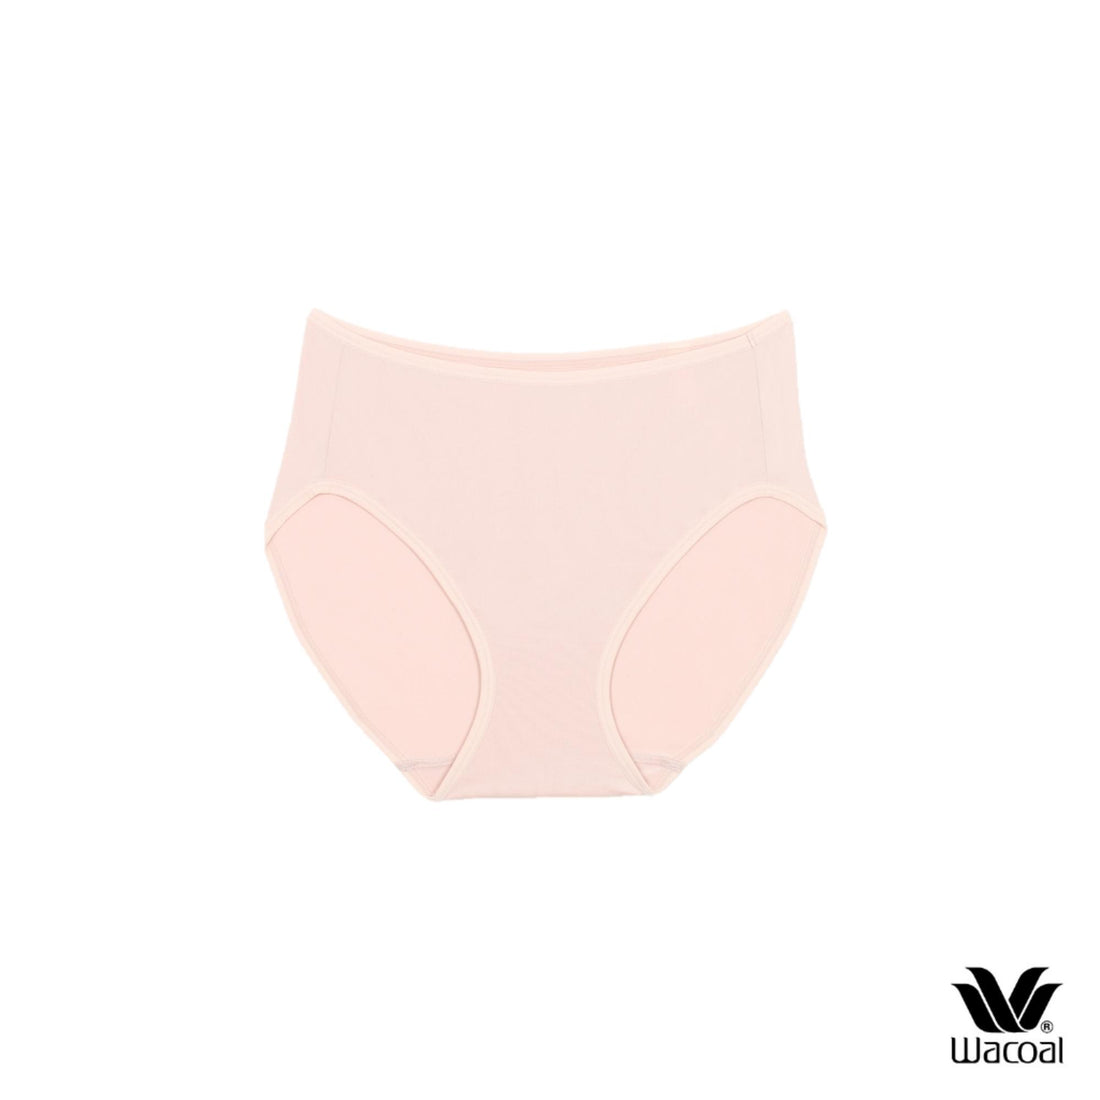 Wacoal Half Panty กางเกงในรูปครึ่งตัว ุ1 Set 3 ชิ้น รุ่น WU3287 ( ซื้อ 1 Set แถม 1 Set)